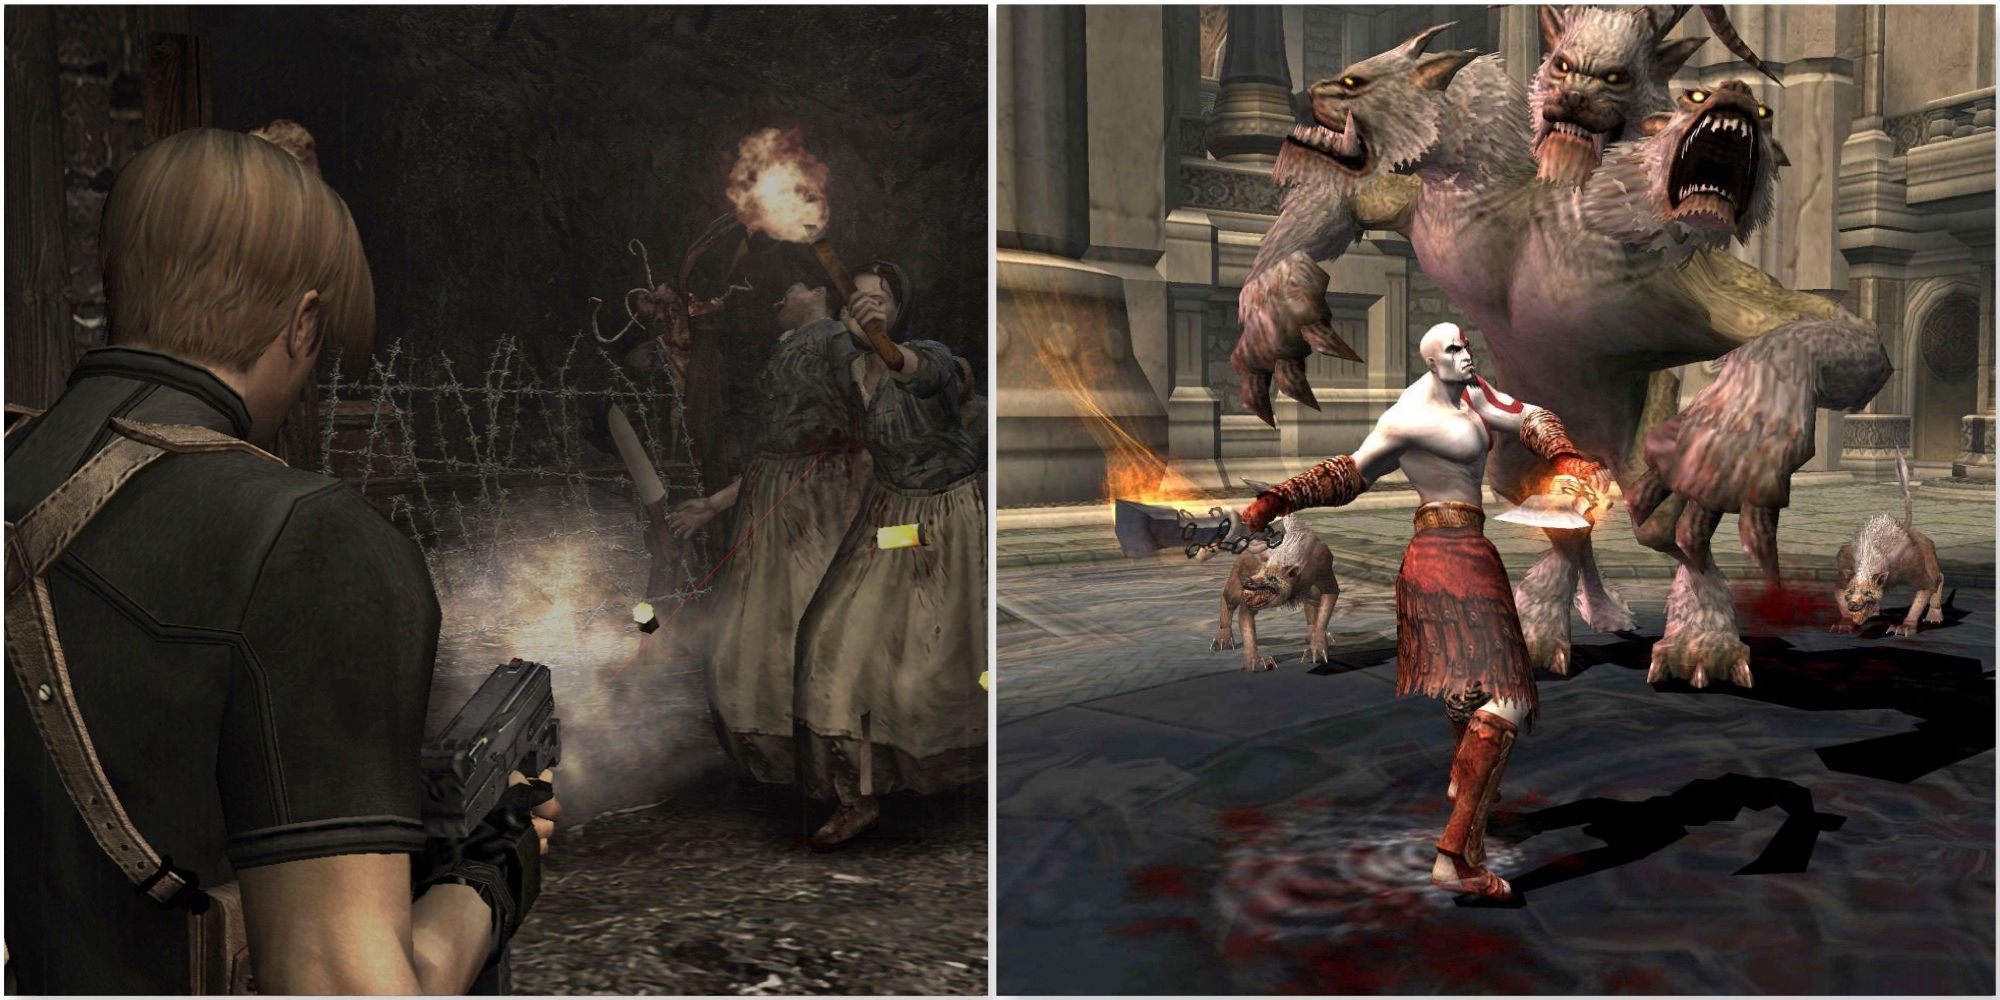 Shooting enemies in Resident Evil 4 (2005) and Fighting enemies in God of War 2 (2007)